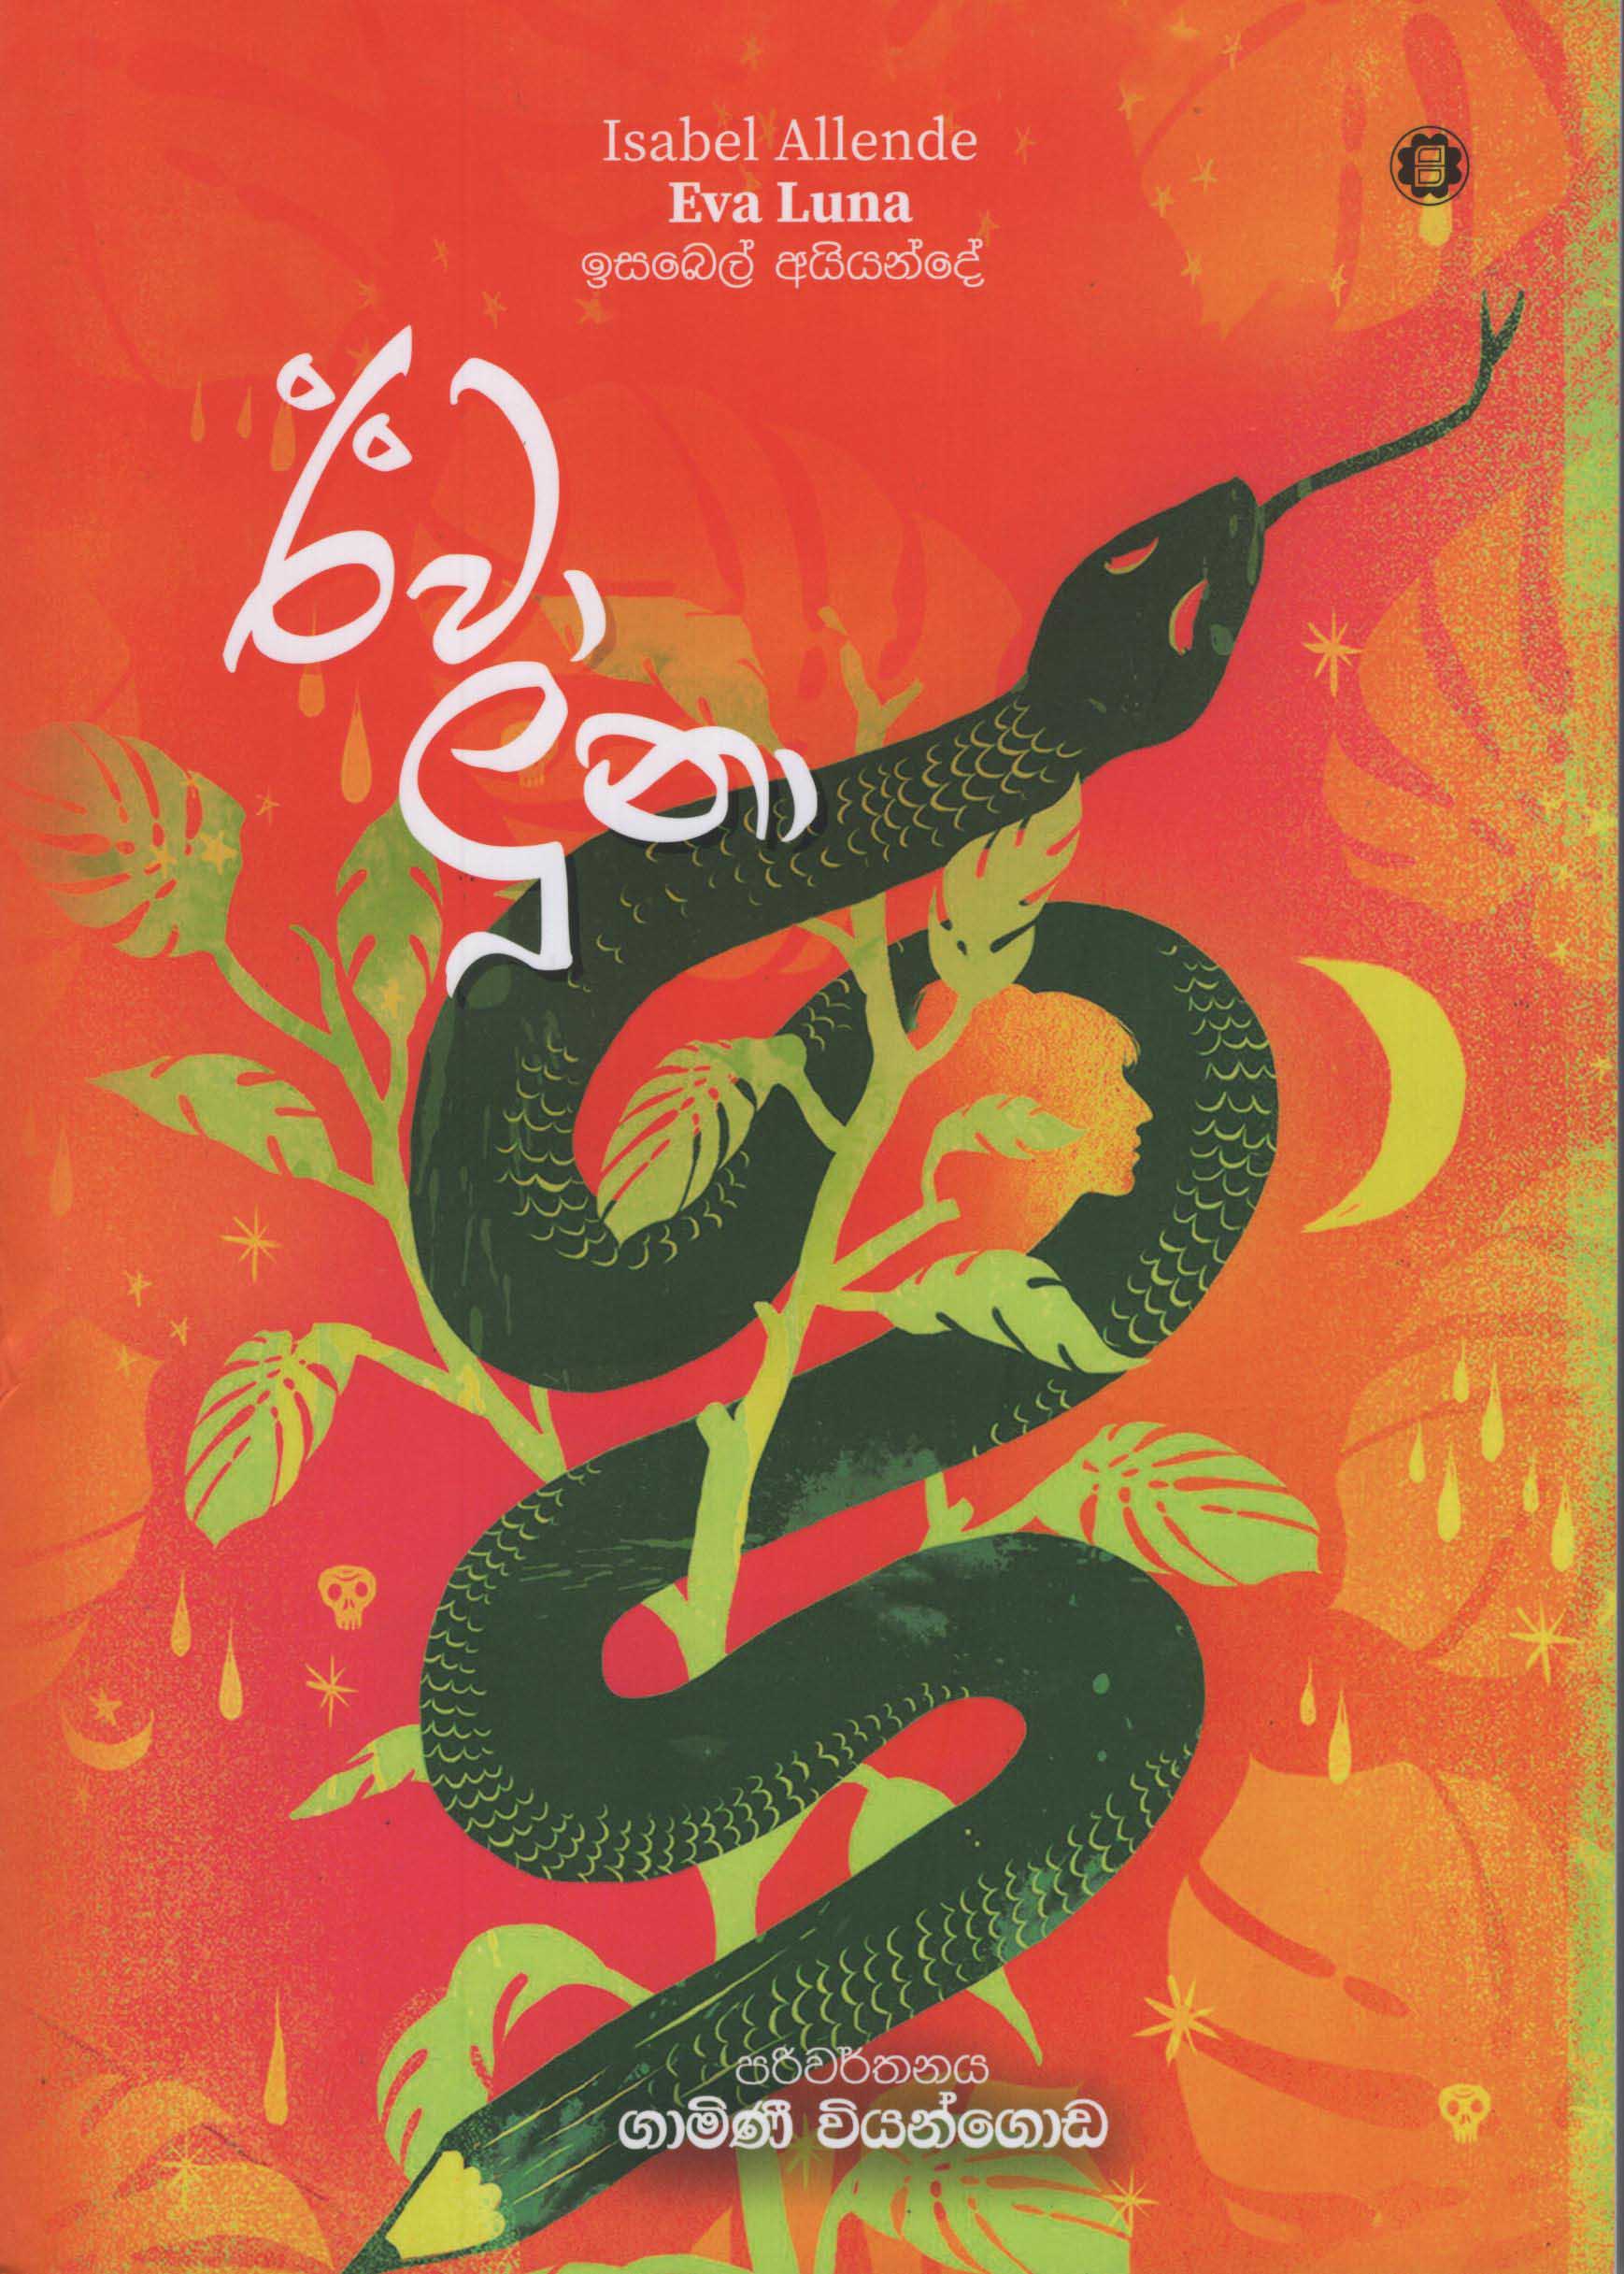 Eva Luna (Isabel Allende Sinhala Translation) - ඊවා ලූනා - ගාමිණී වියන්ගොඩ - ඉසබෙල් අයියන්දේ